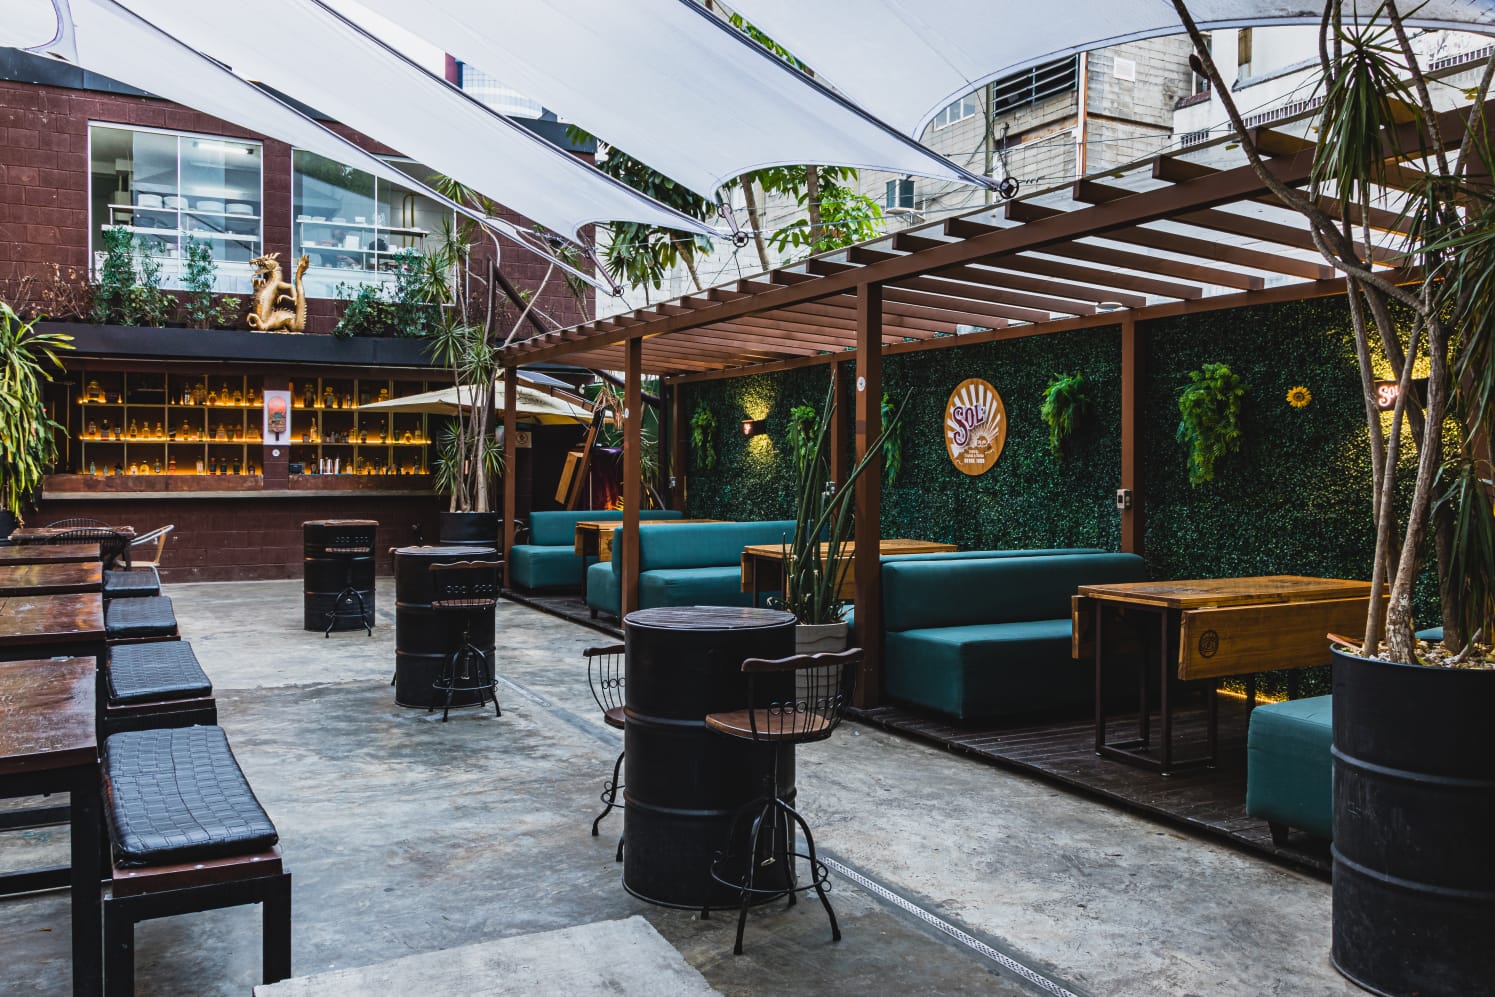 Iscondido, bar em São Paulo - Família Jack Daniels convida. Foto: Divulgação